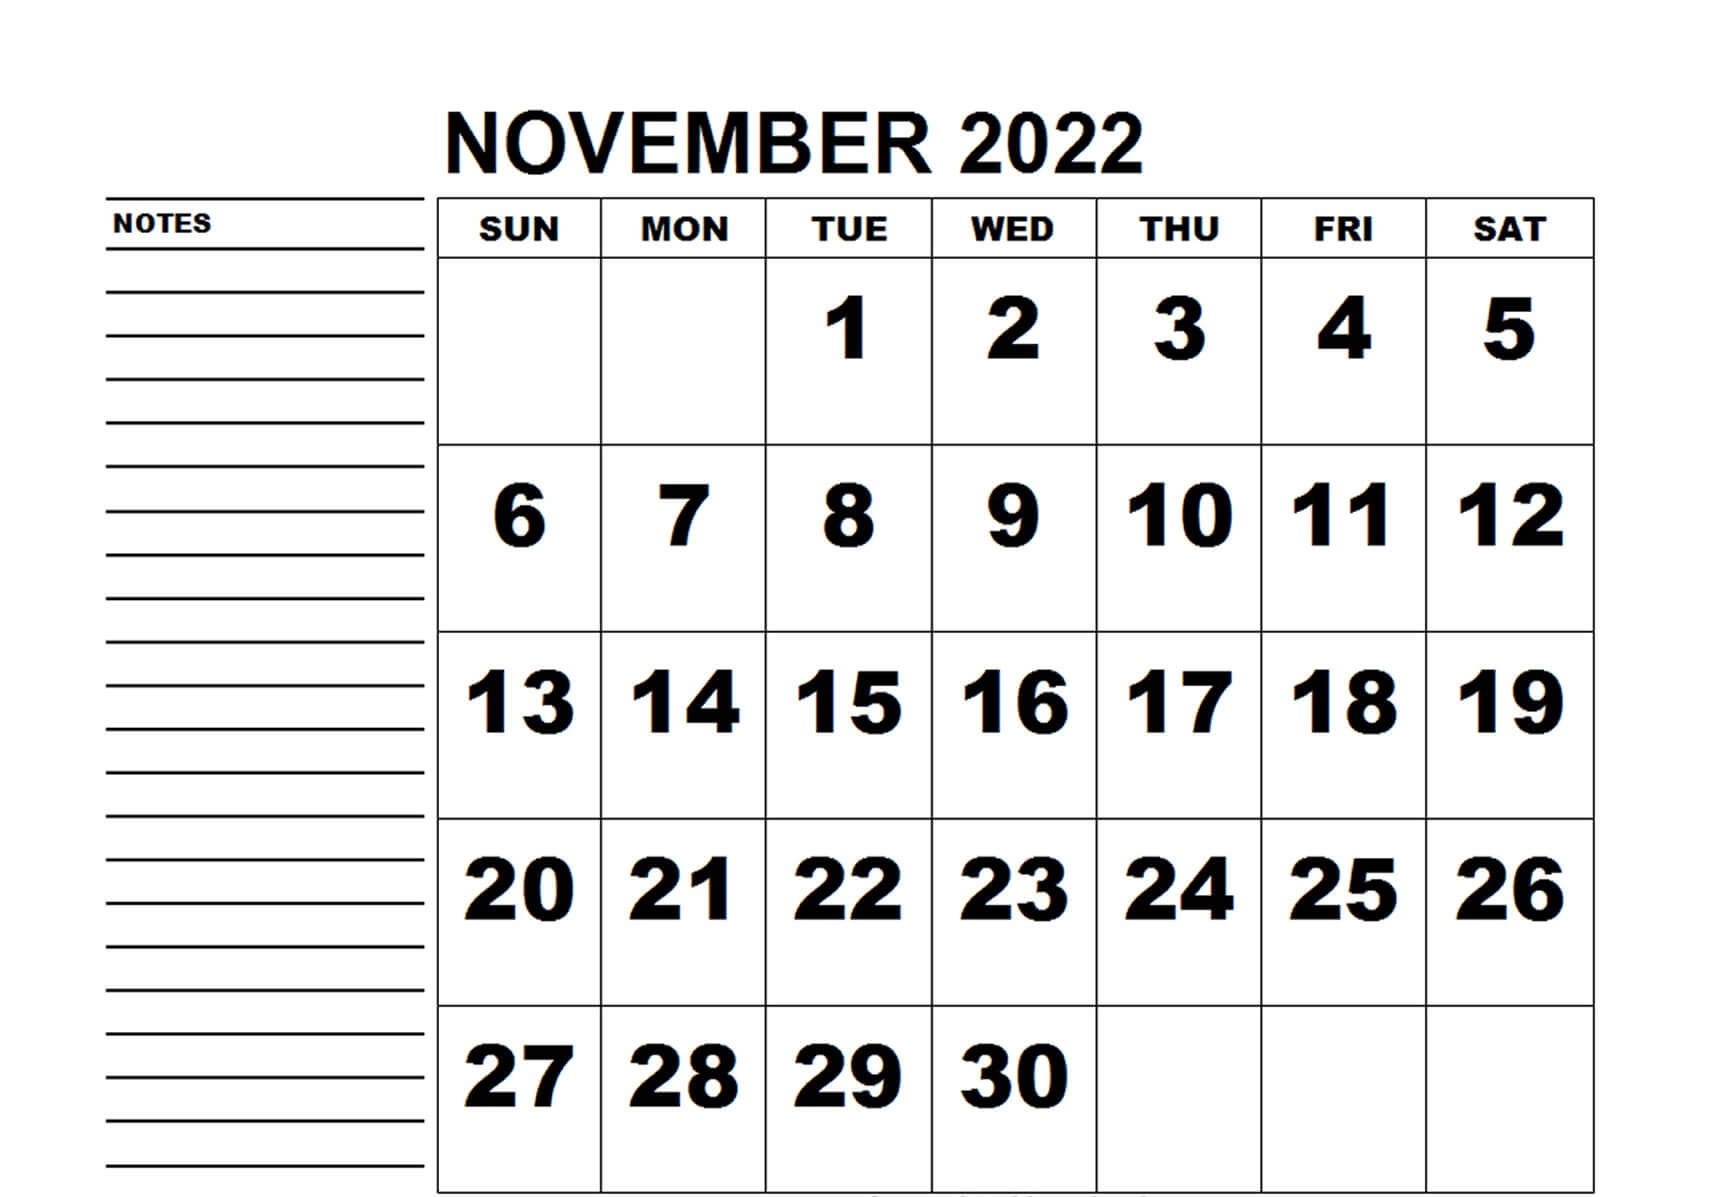 November 2022 Calendar with Notes